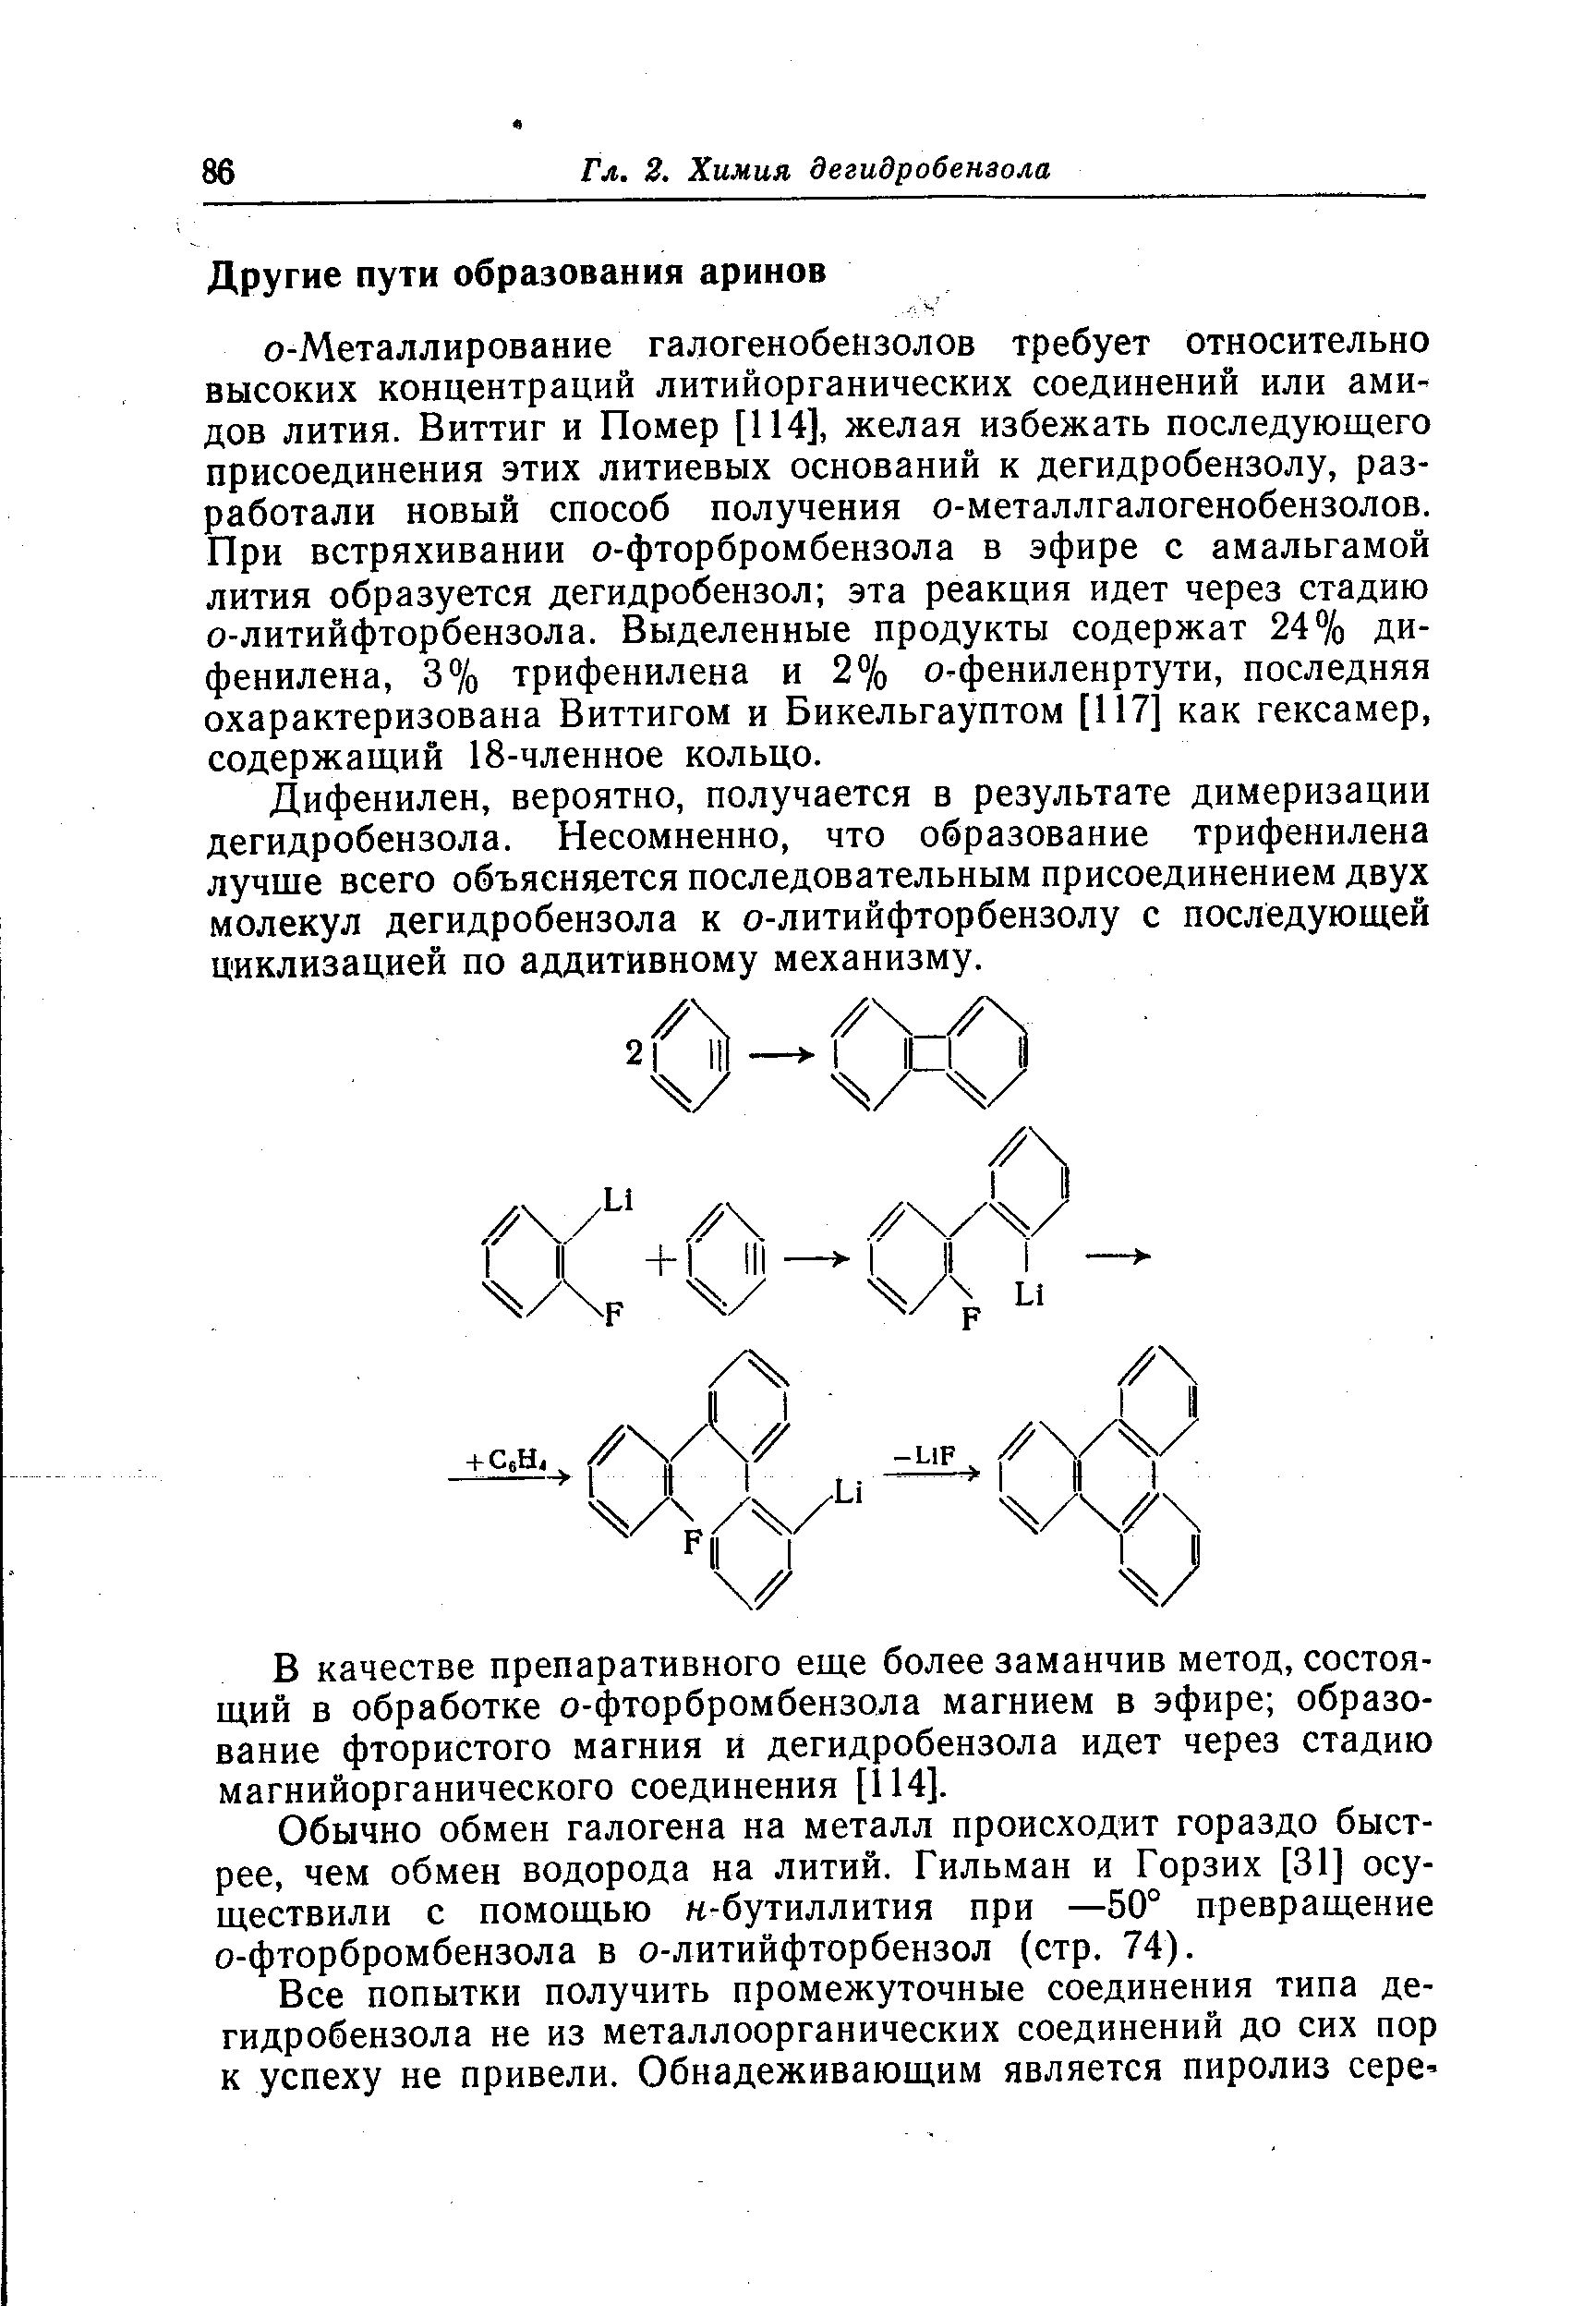 Дифенилен, вероятно, получается в результате димеризации дегидробензола. Несомненно, что образование трифенилена лучше всего объясняется последовательным присоединением двух молекул дегидробензола к о-литийфторбензолу с последующей циклизацией по аддитивному механизму.